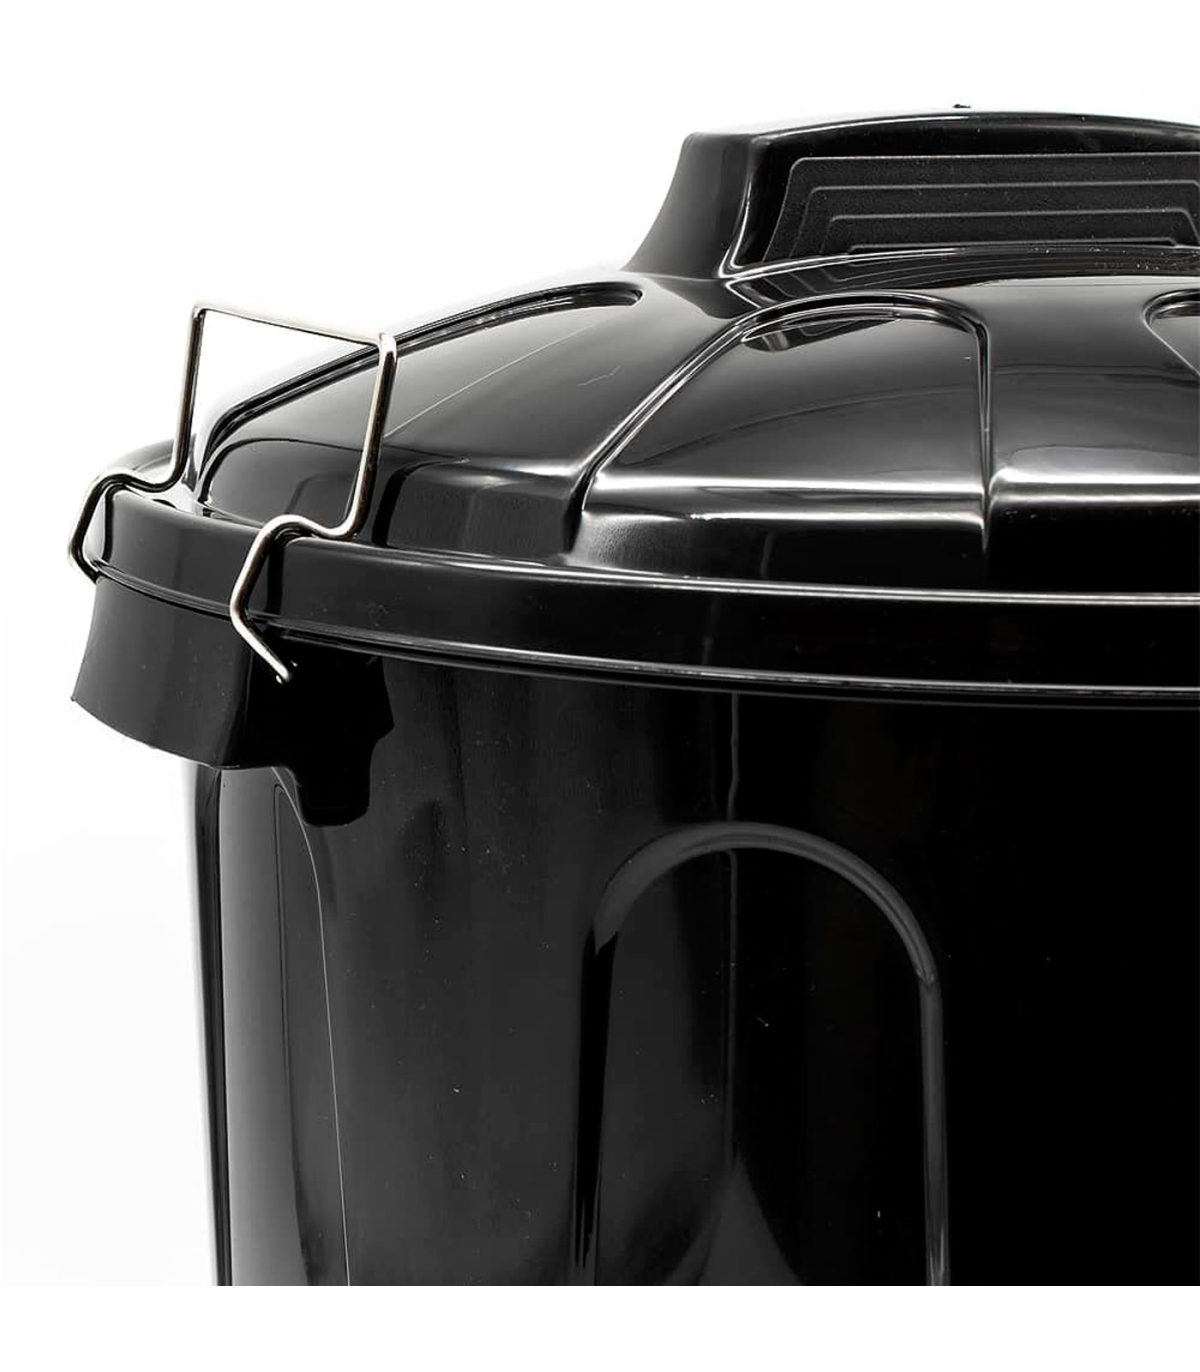  YURKURA Cubo de basura orgánico para interiores y hogares,  contenedor de basura pequeño y ligero para encimeras de cocina, tapa  apretada para control de olores, rápida y fácil de abrir, limpieza